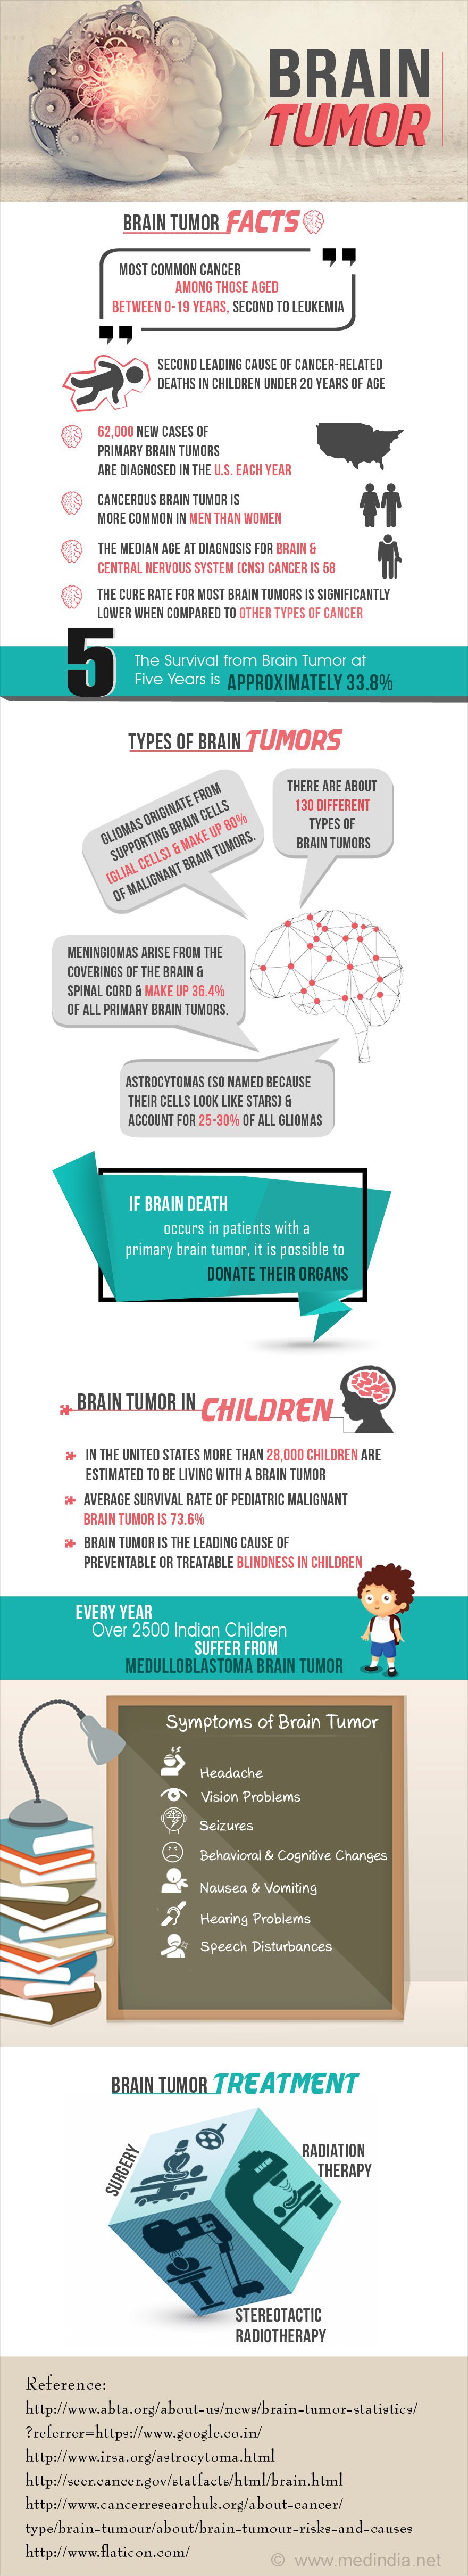 Infographic on Brain Tumor